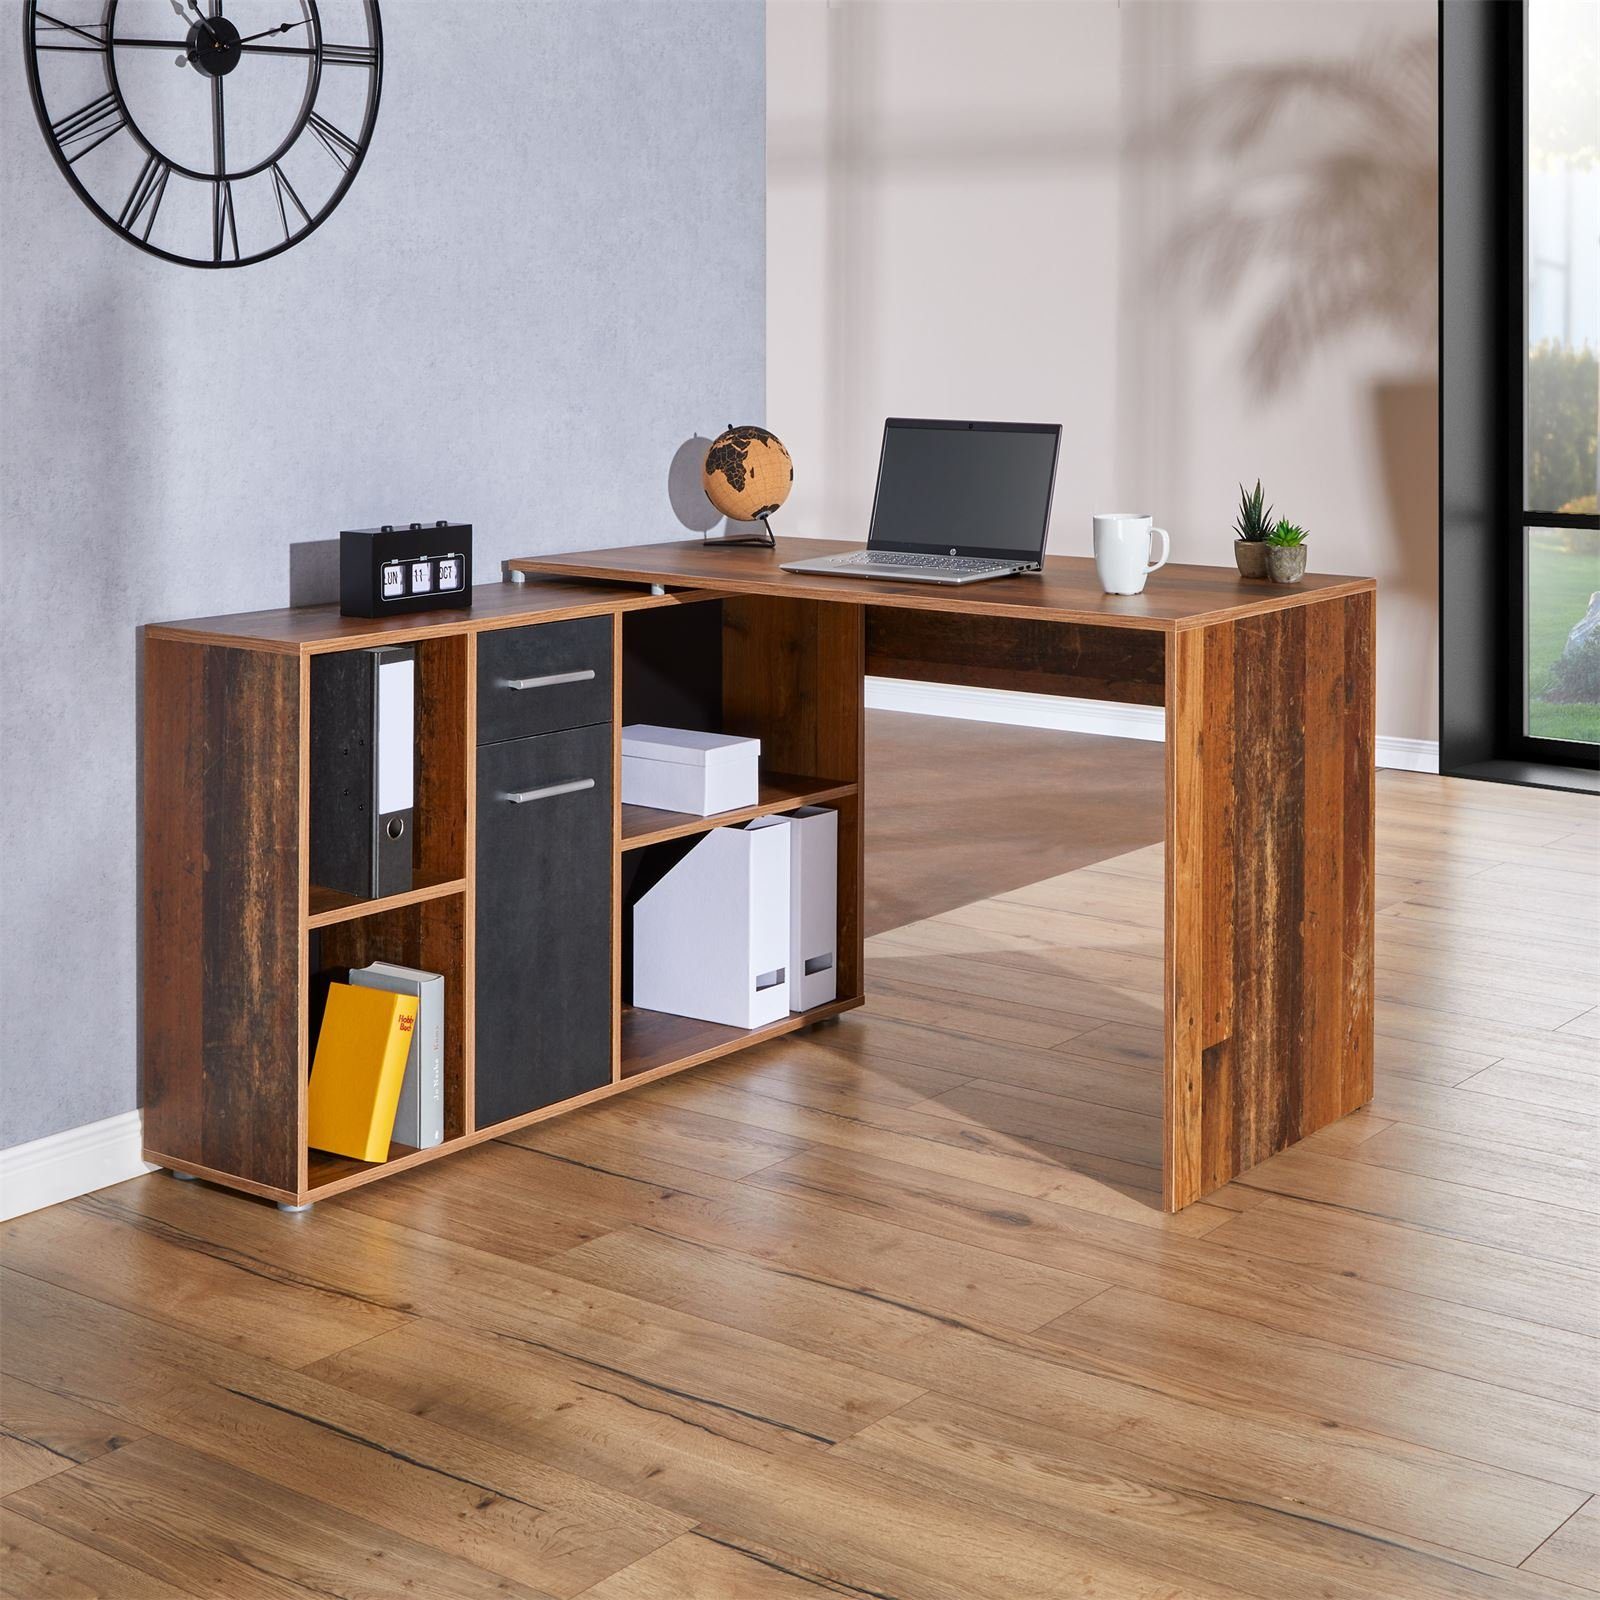 DIEGO, Büro Eckschreibtisch Arbeits CARO-Möbel Eckschreibtisch mit Winkelschreibtisch Old Style/Be Regal